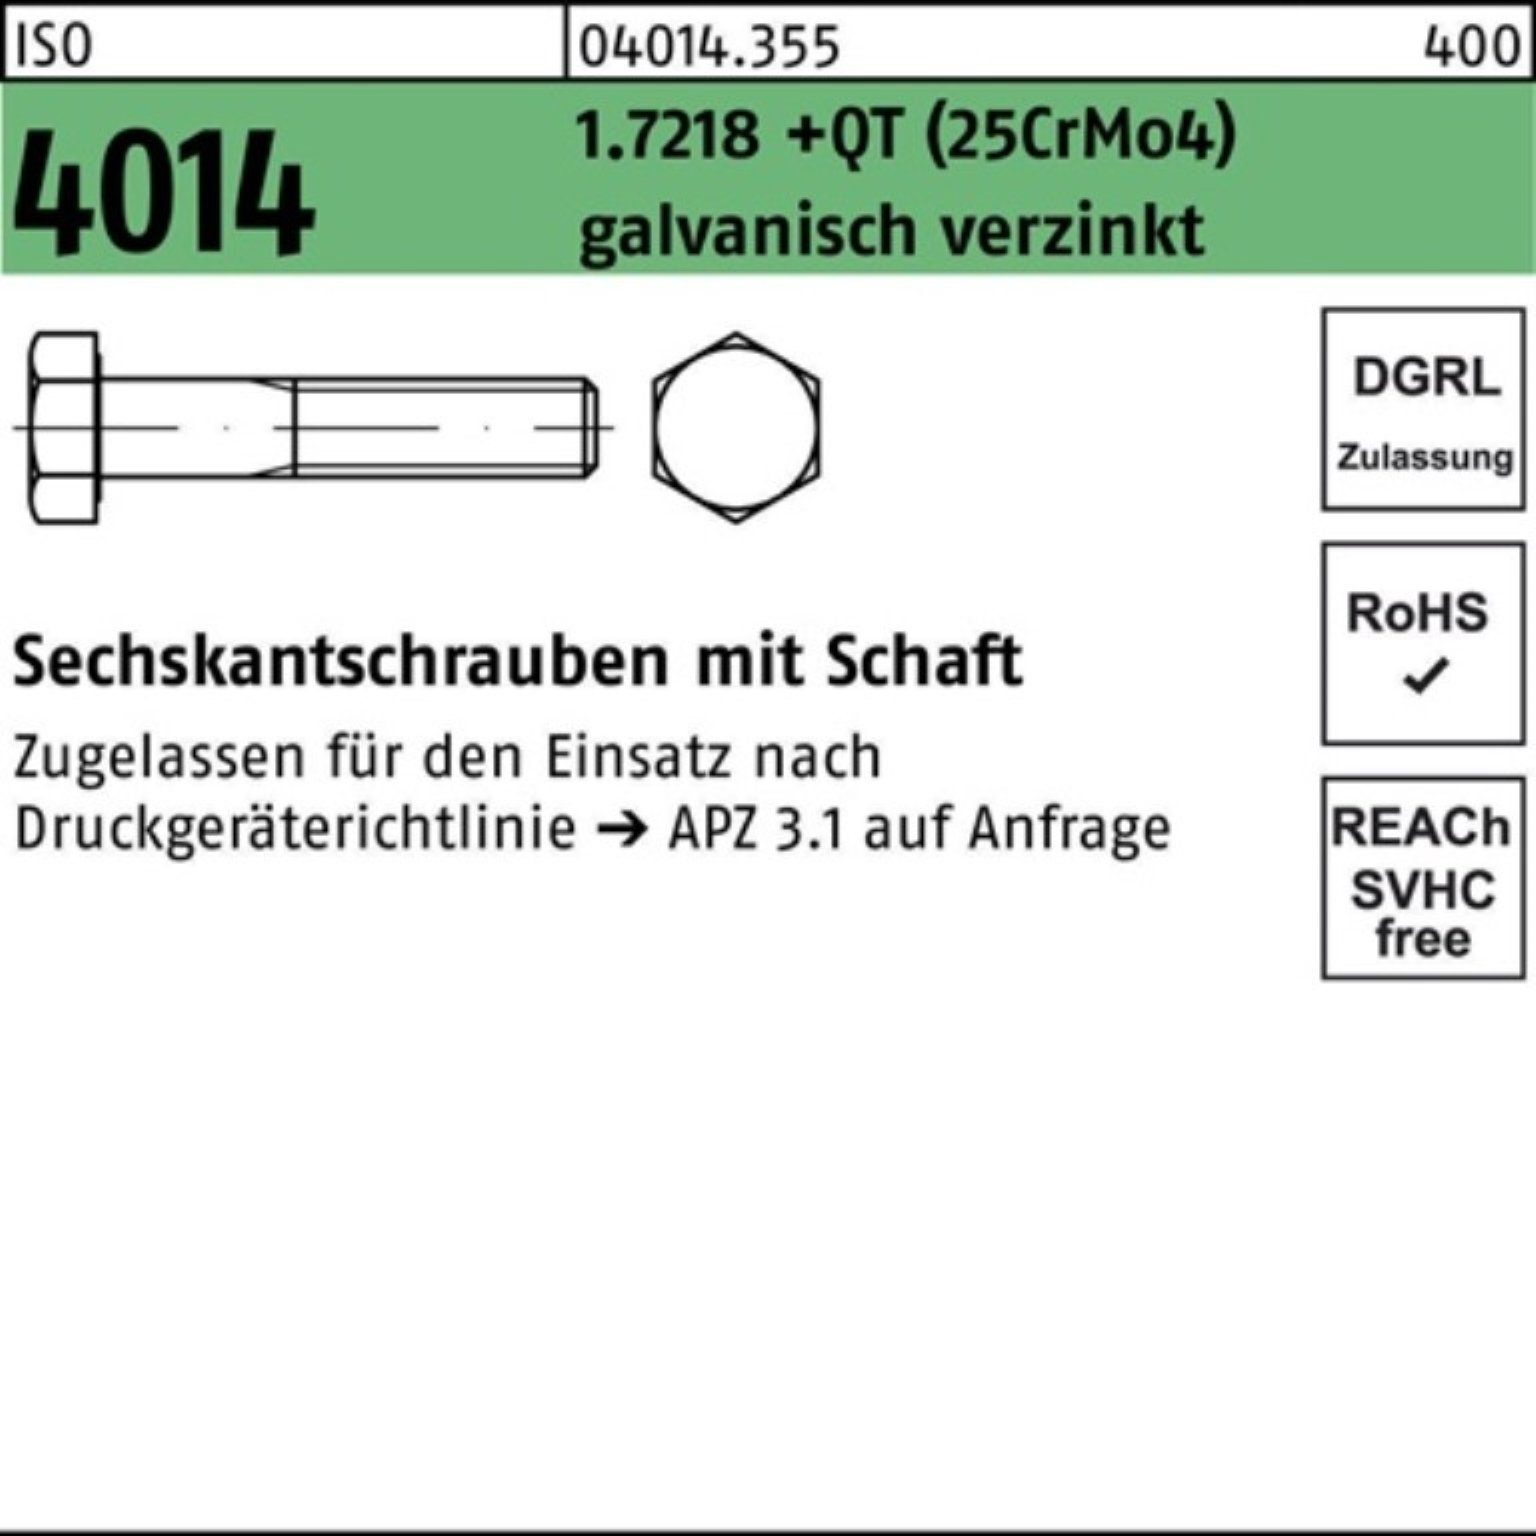 Bufab Sechskantschraube 100er Pack 1.7218 Sechskantschraube +QT (25CrM Schaft 4014 M27x220 ISO